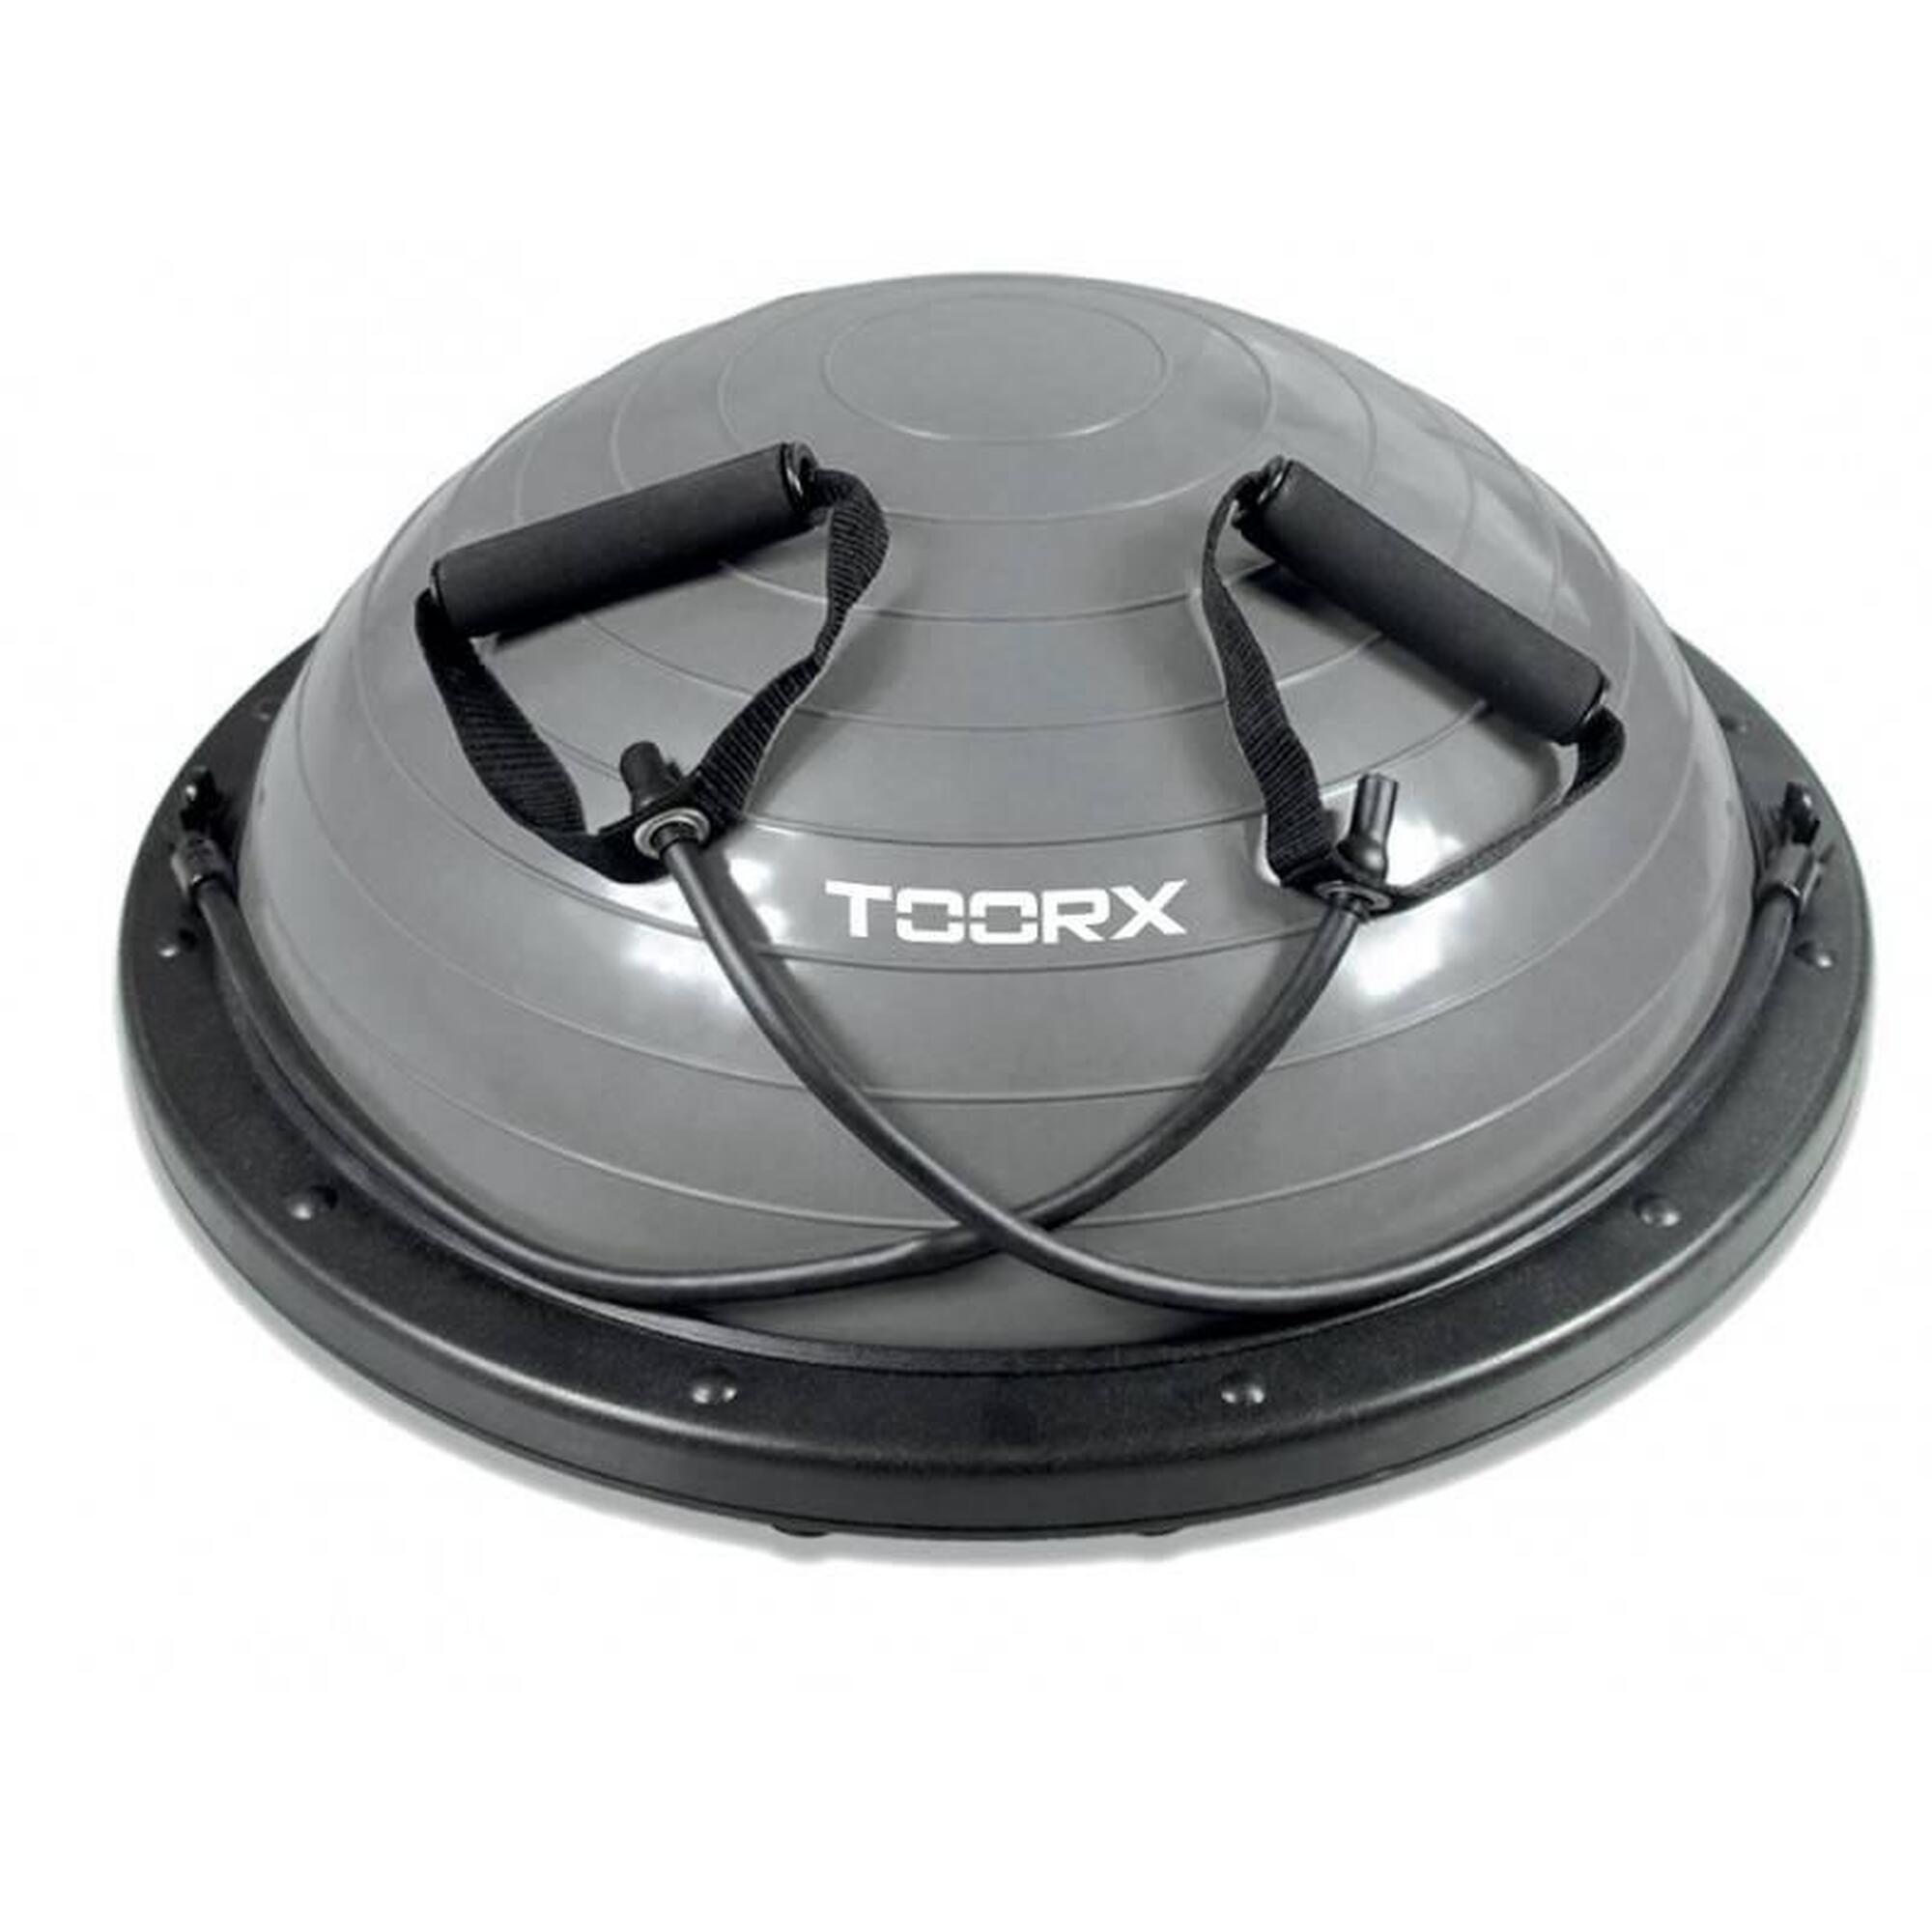 Toorx Balance-Trainer mit Widerstandsschläuchen - inkl. Pumpe